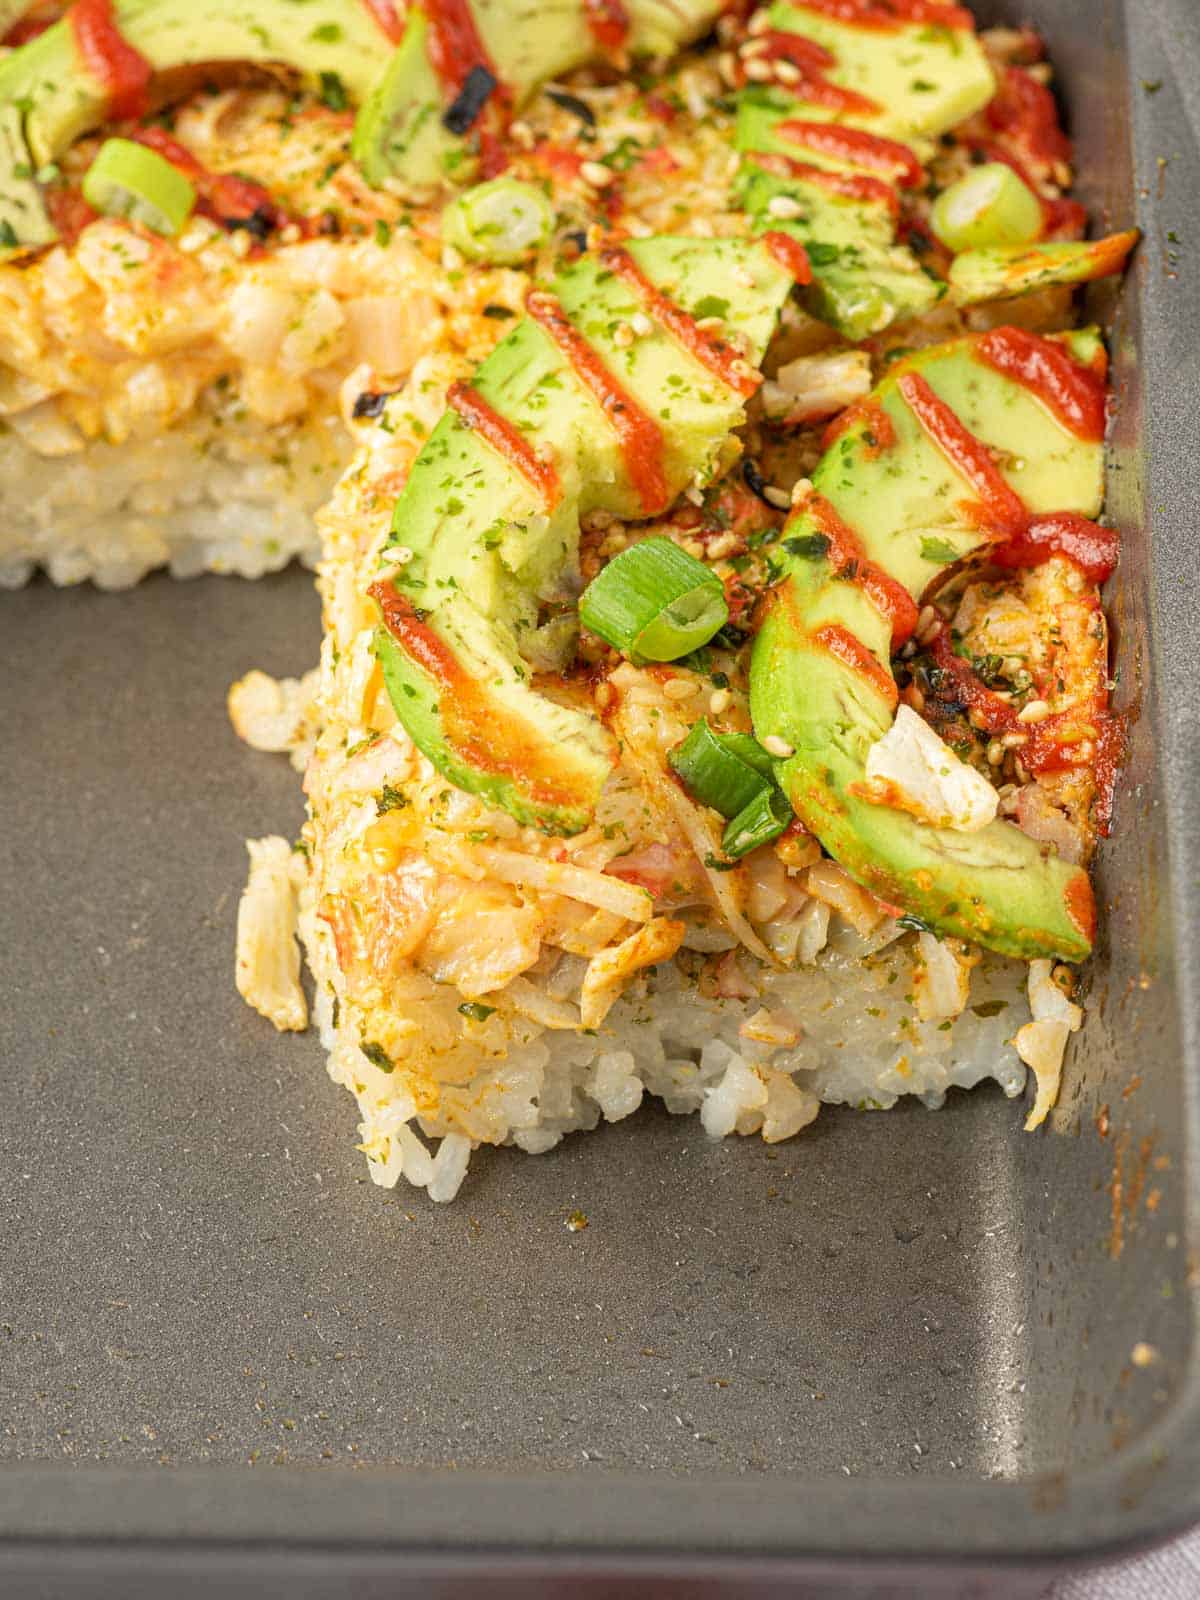 Imitation crab sushi bake in a casserole dish.